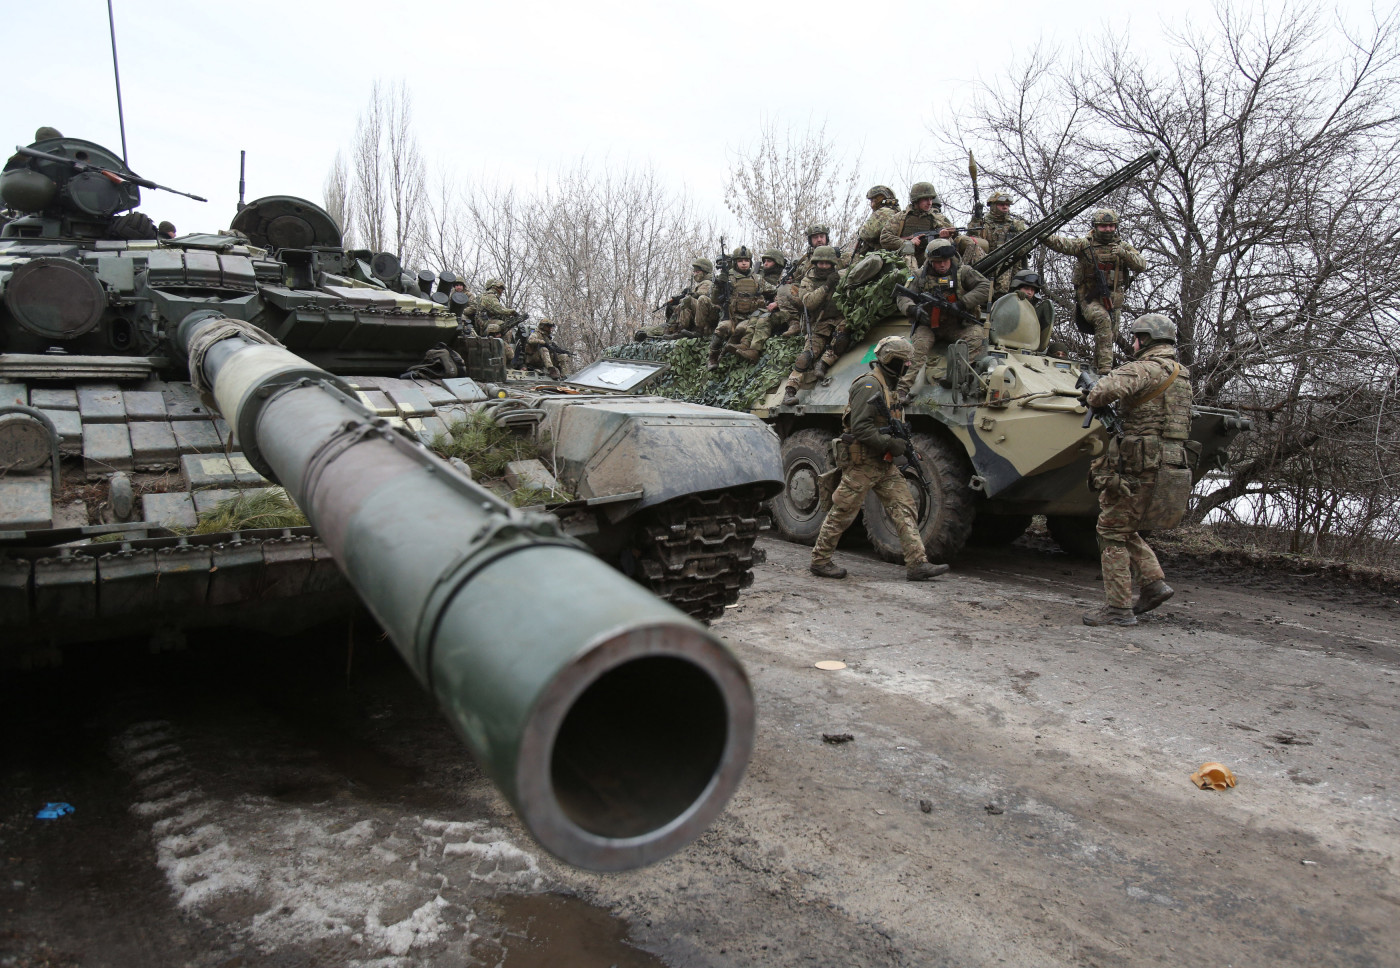 Militares ucranianos se preparam para repelir um ataque na região de Lugansk, na Ucrânia, em 24 de fevereiro de 2022